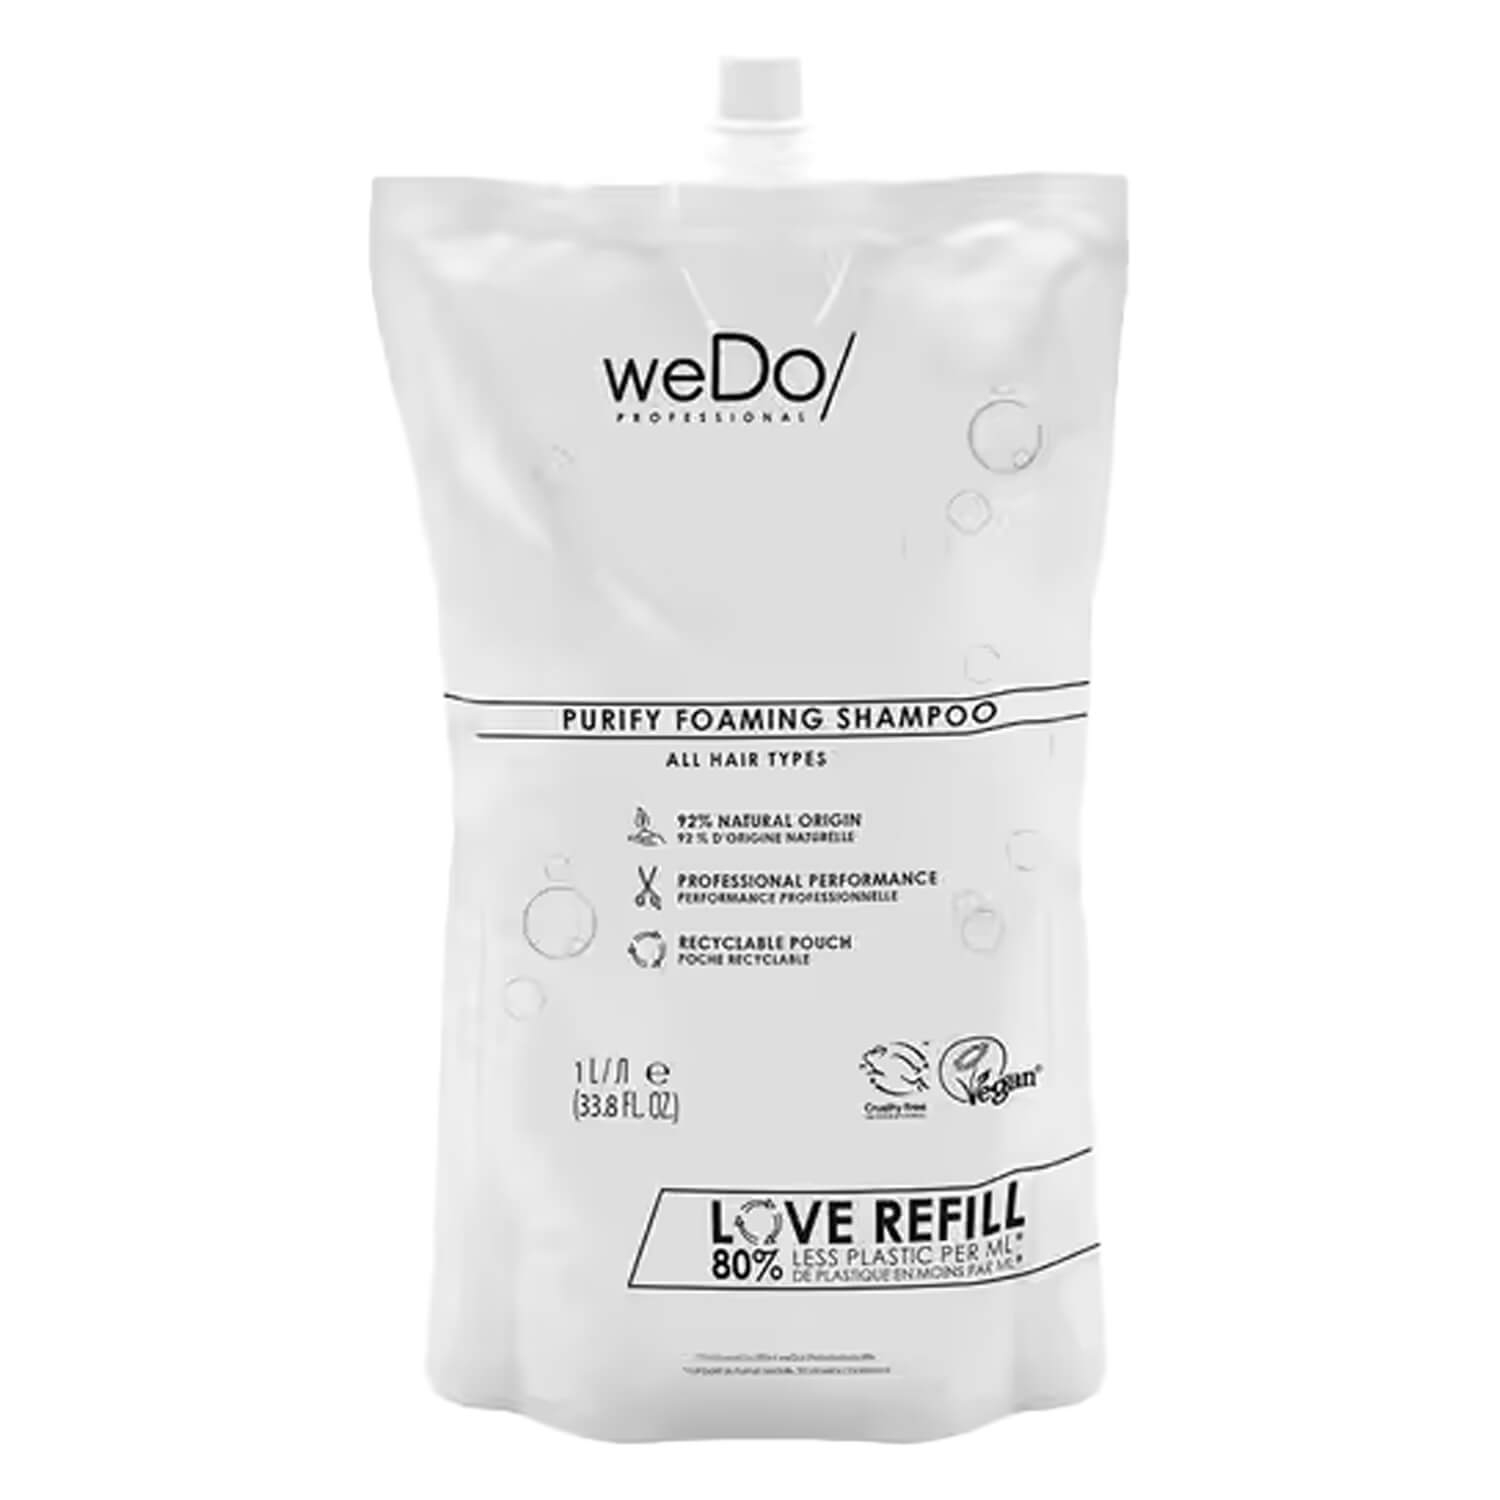 Produktbild von weDo/ - Purify Shampoo Refill